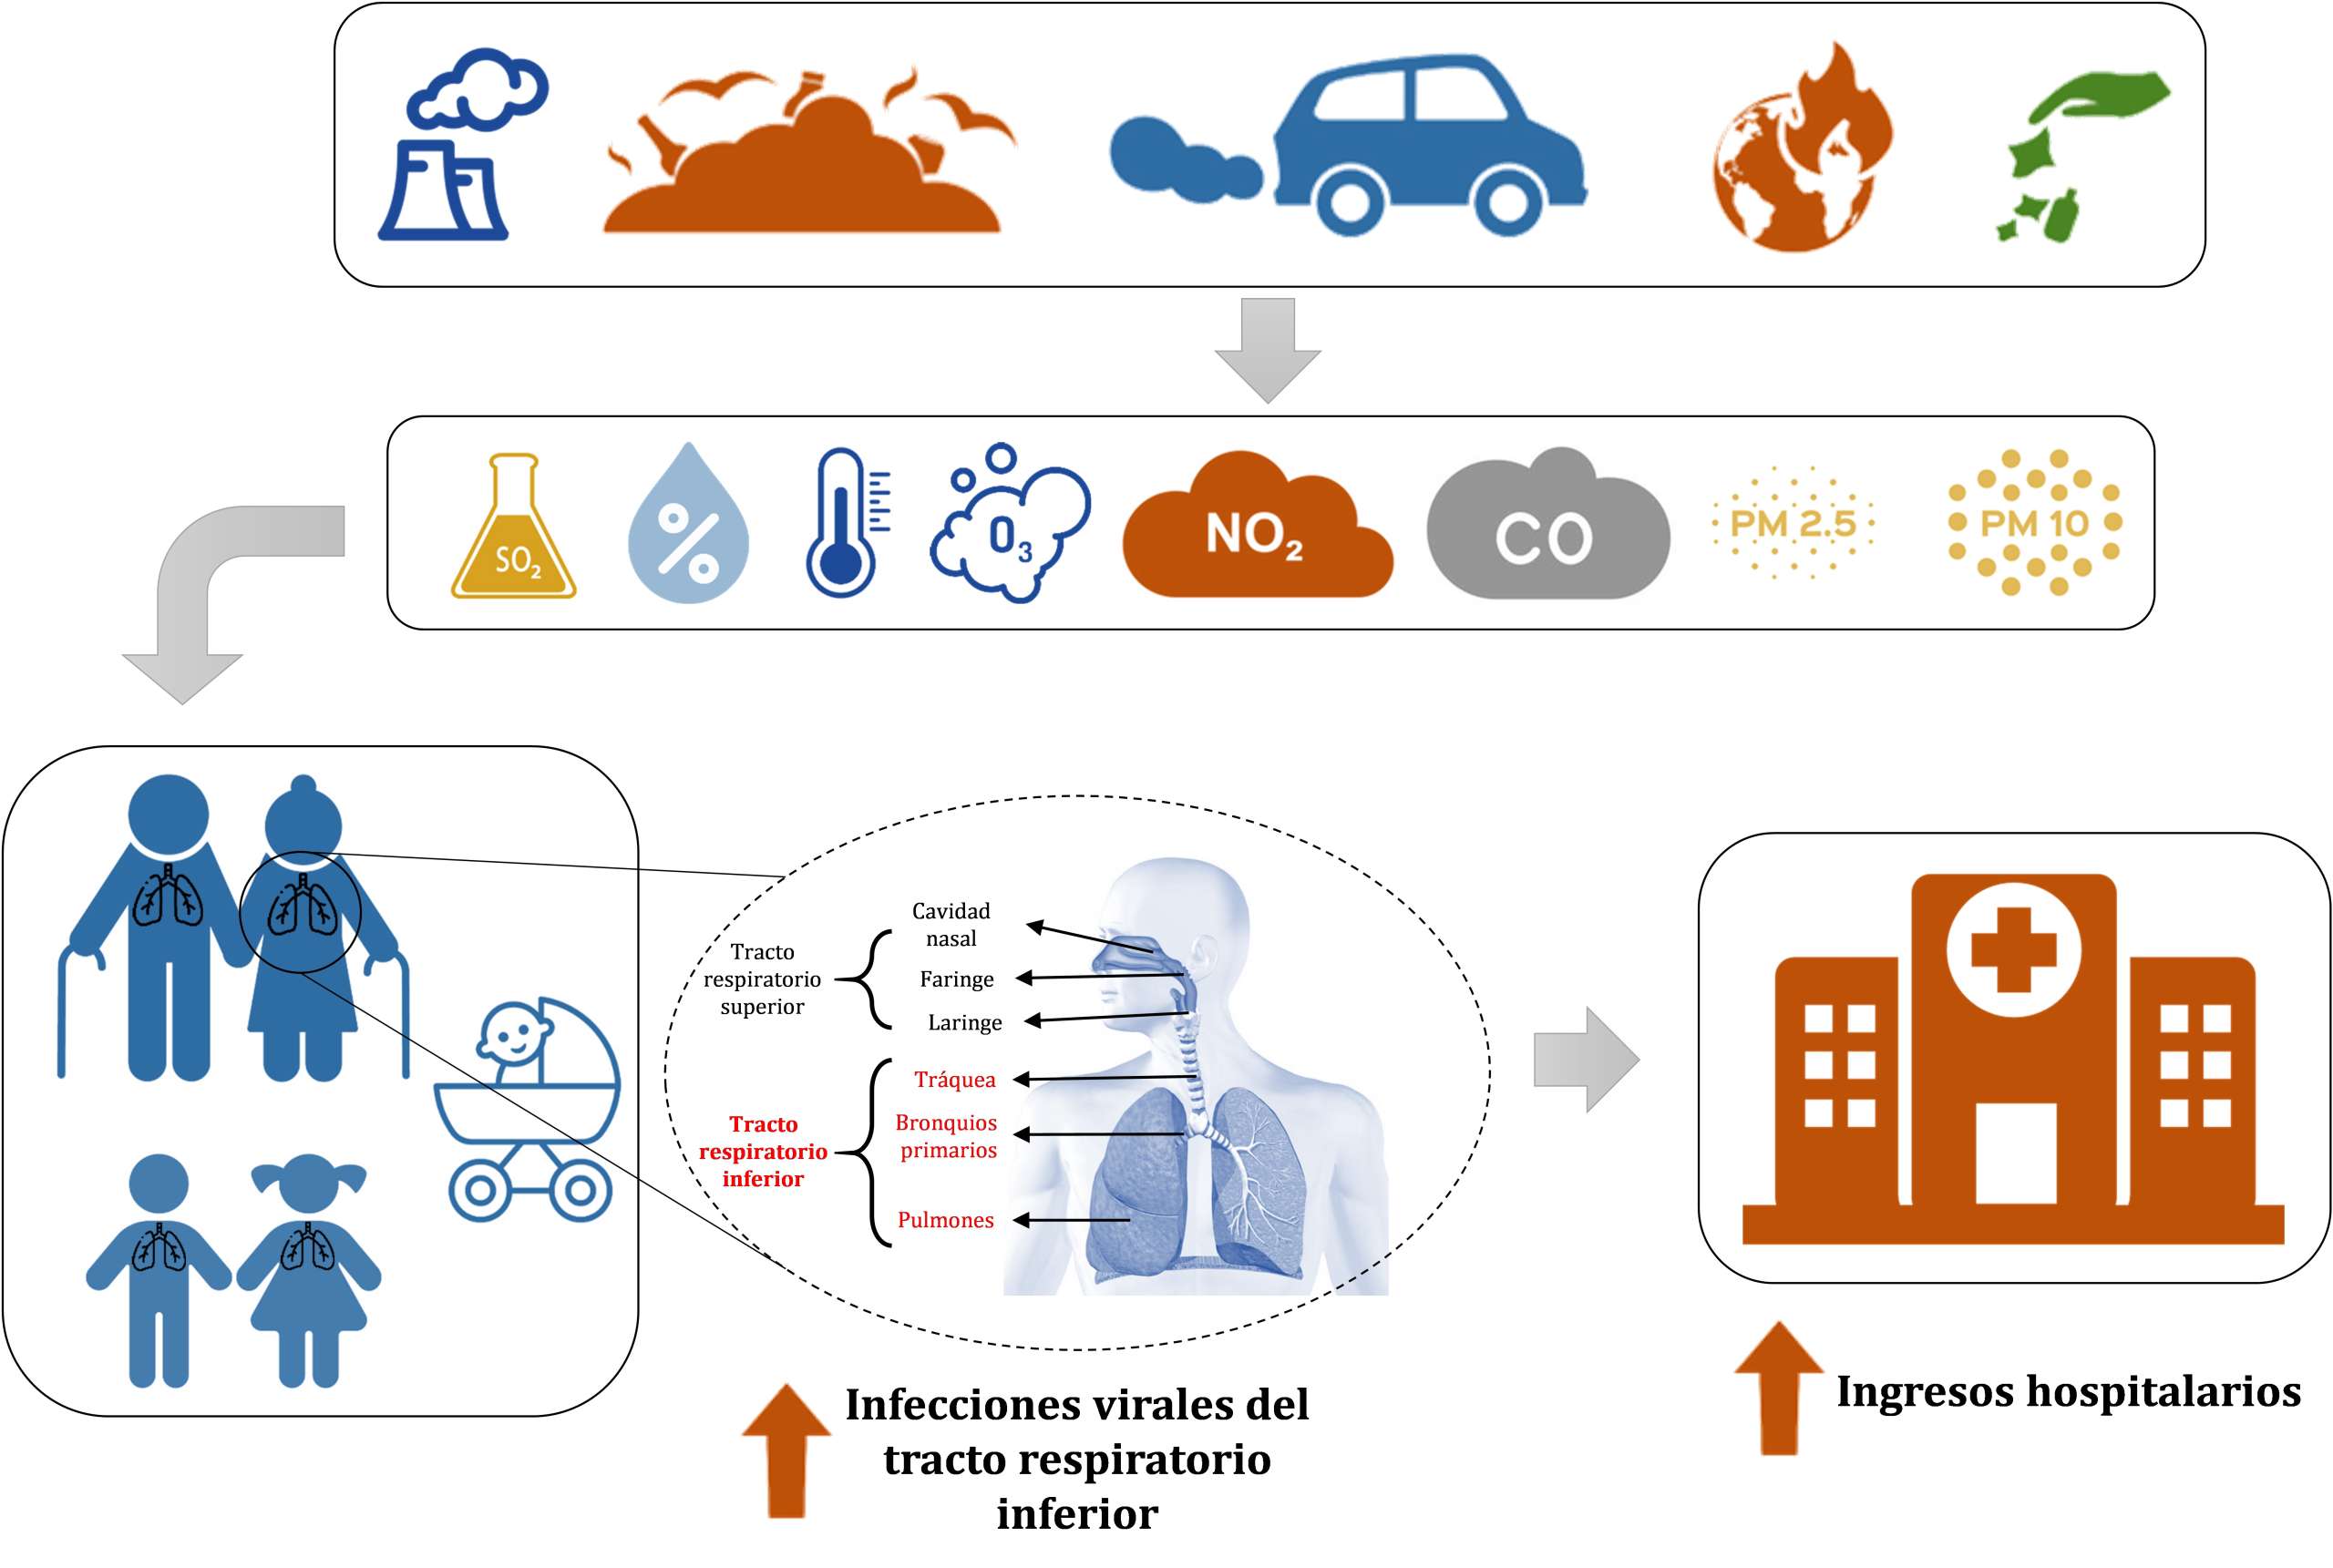 Ciclo de las infecciones respiratorias agudas de las vías bajas por contaminación atmosférica.